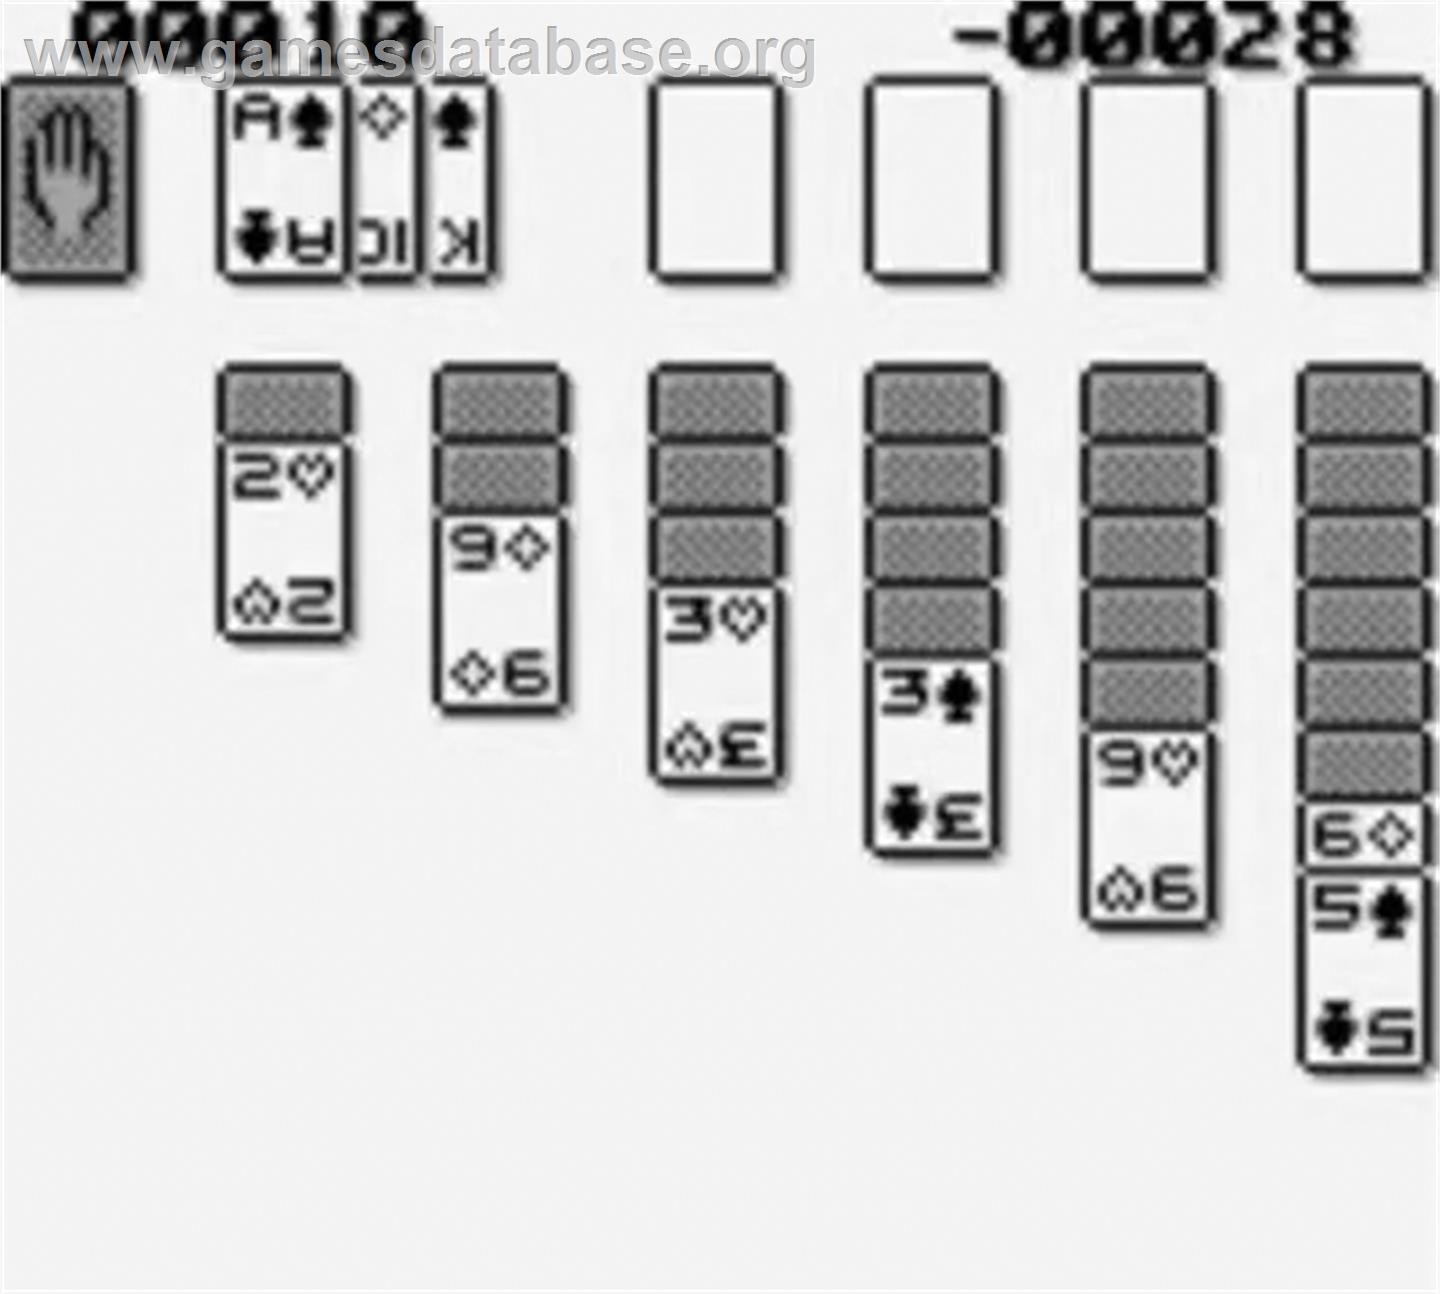 Solitaire FunPak - Nintendo Game Boy - Artwork - In Game